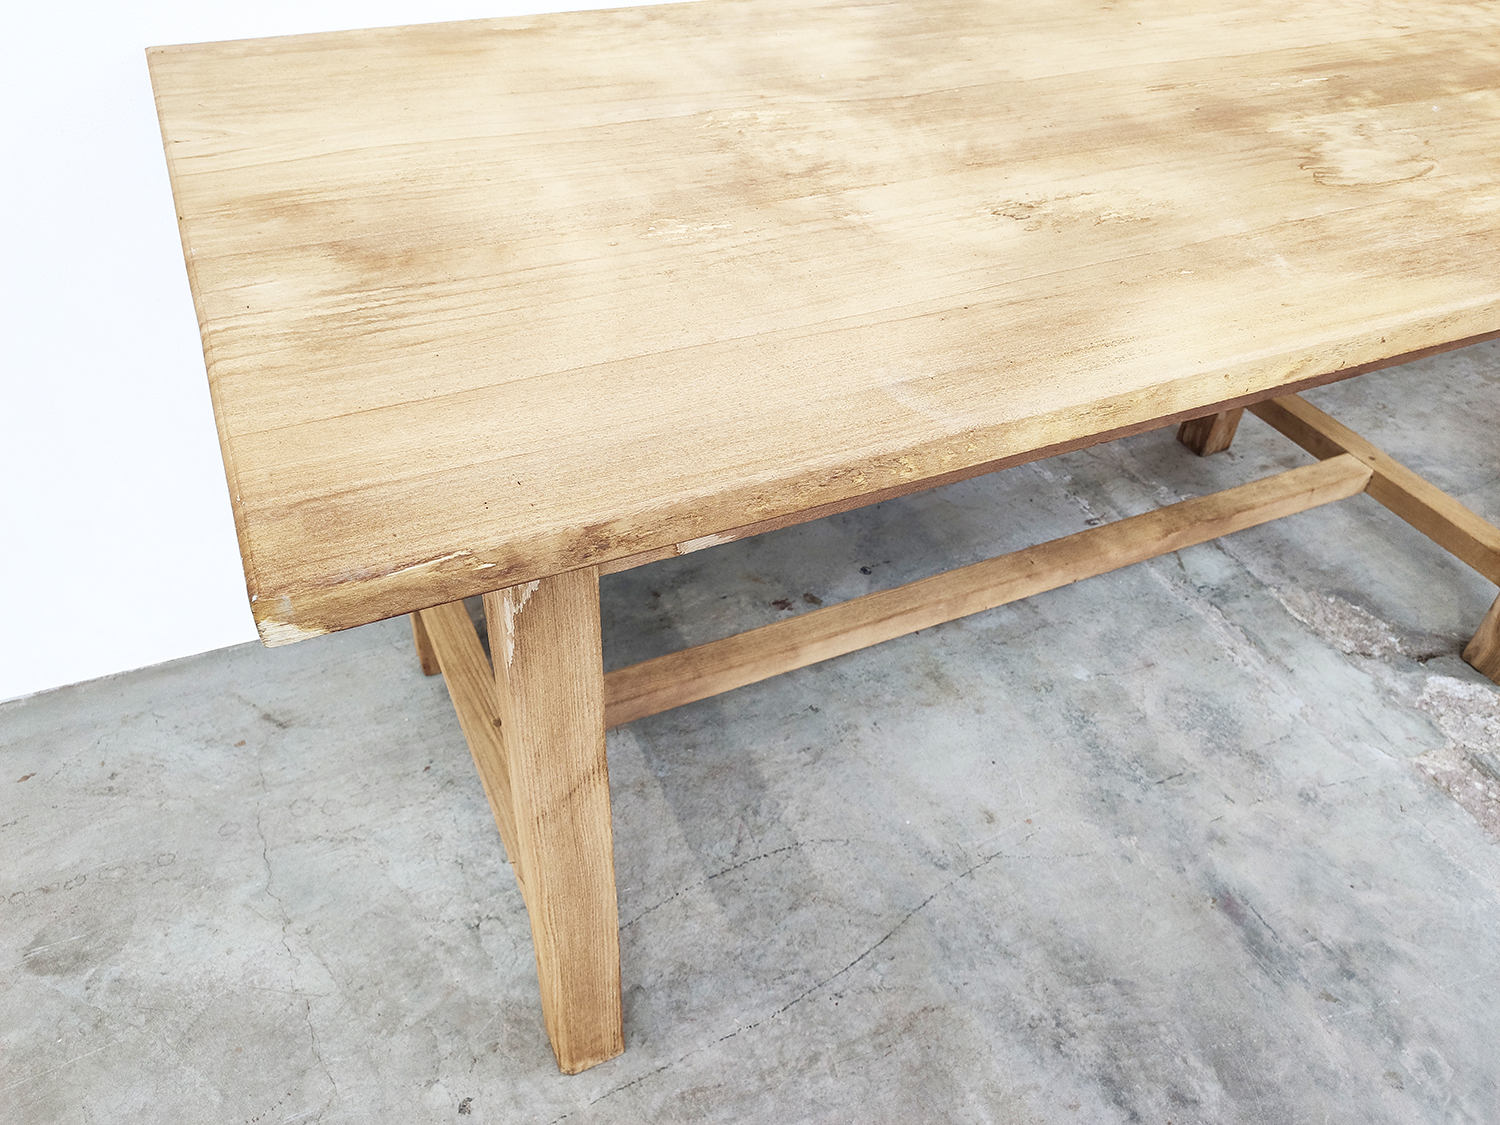 La table atelier XL - Meuble de rangement en bois